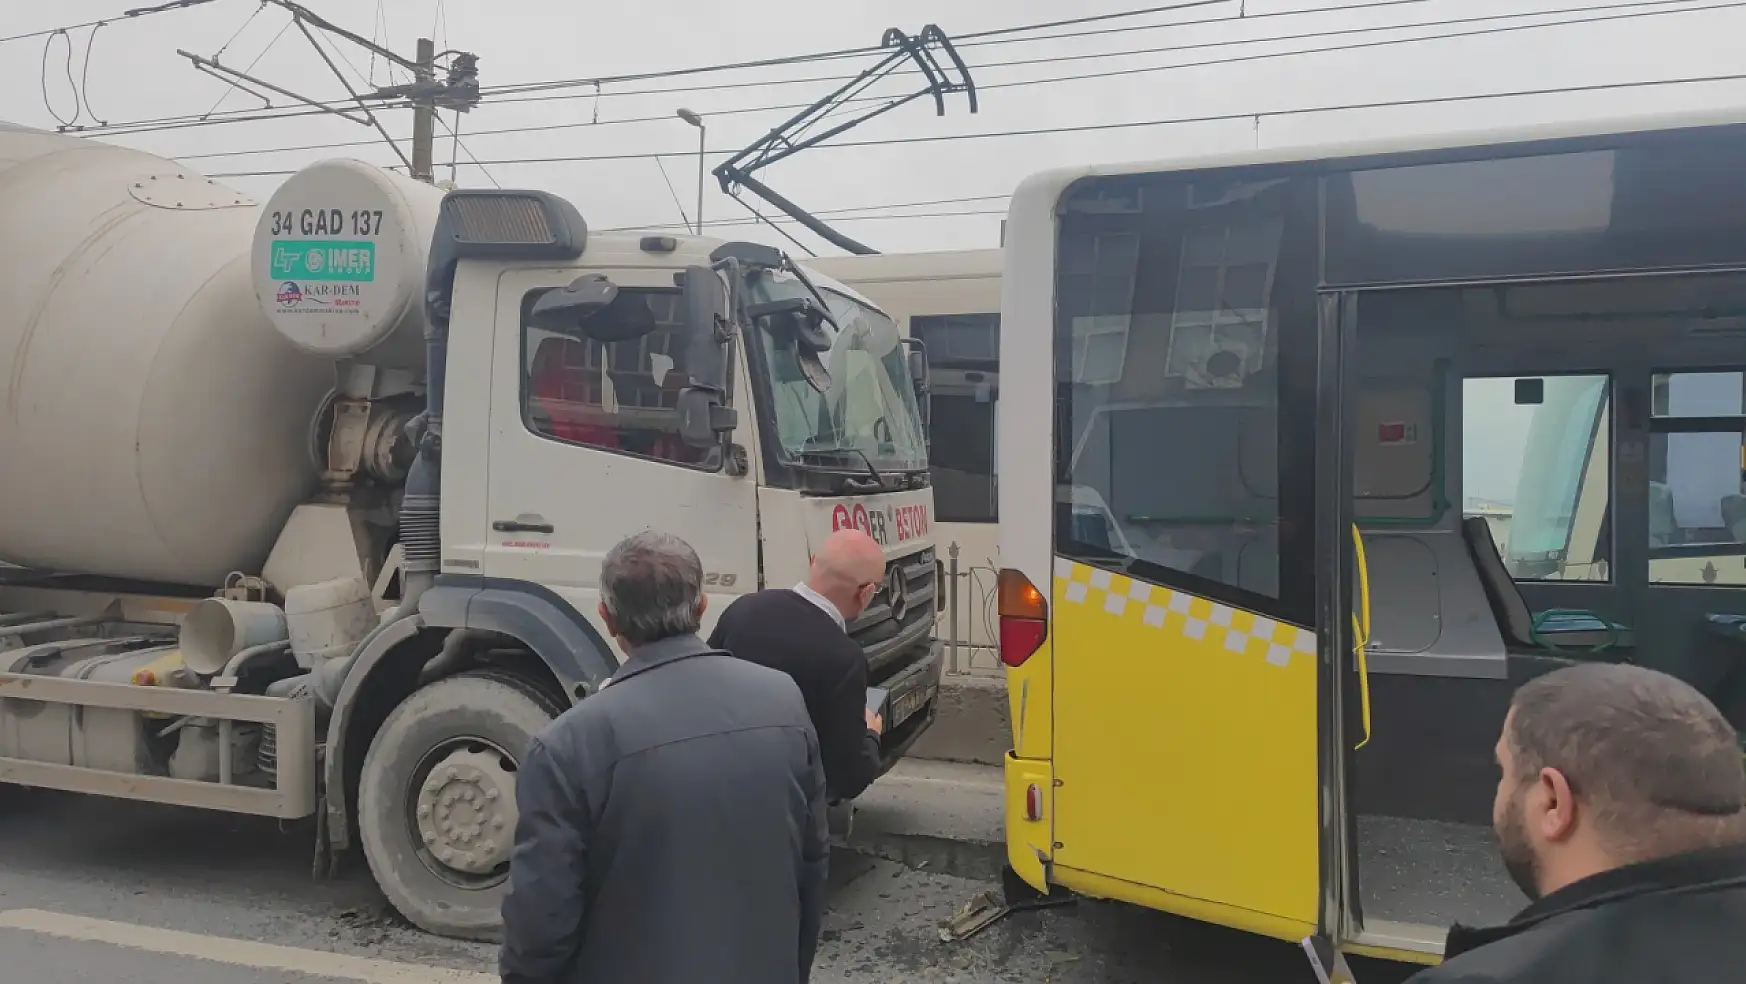 Faciadan Dönüldü: Beton Mikseri İett Otobüsüne Çarptı, 4 Kişi Yaralandı